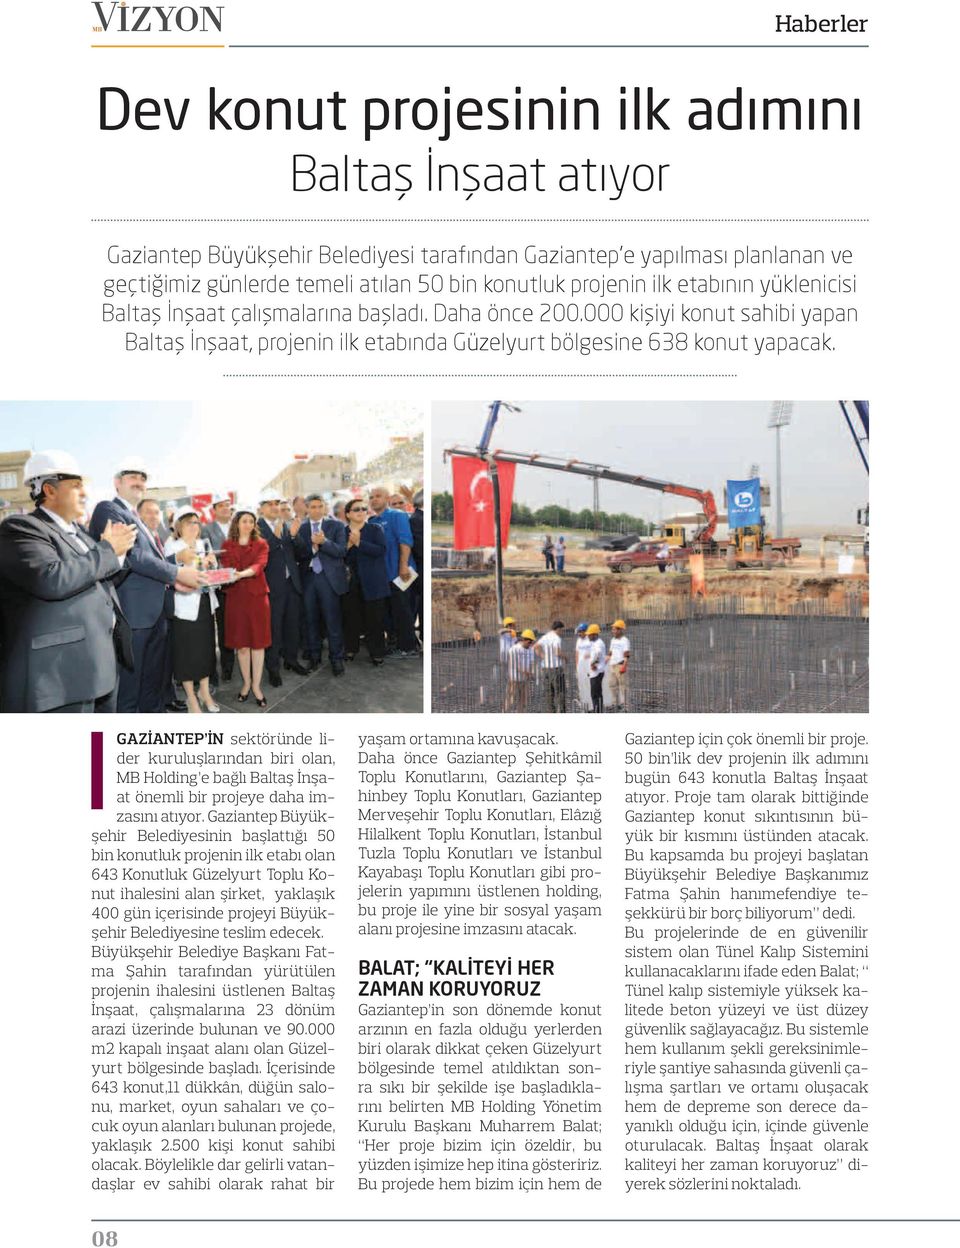 Gaziantep in sektöründe lider kuruluşlarından biri olan, MB Holding e bağlı Baltaş İnşaat önemli bir projeye daha imzasını atıyor.